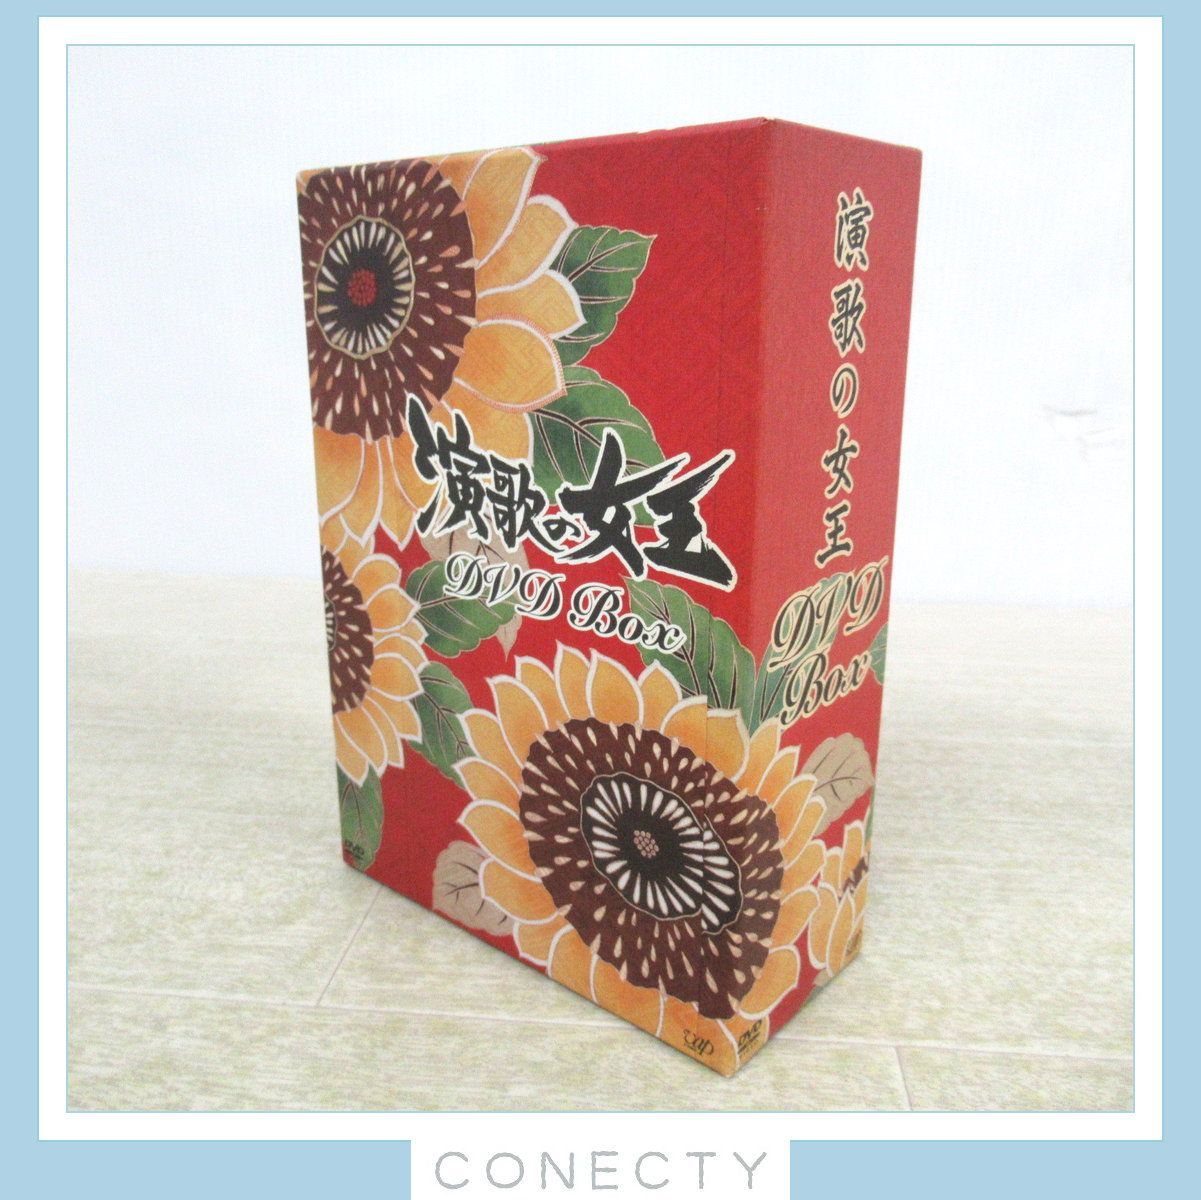 演歌の女王 DVD-BOX〈4枚組〉